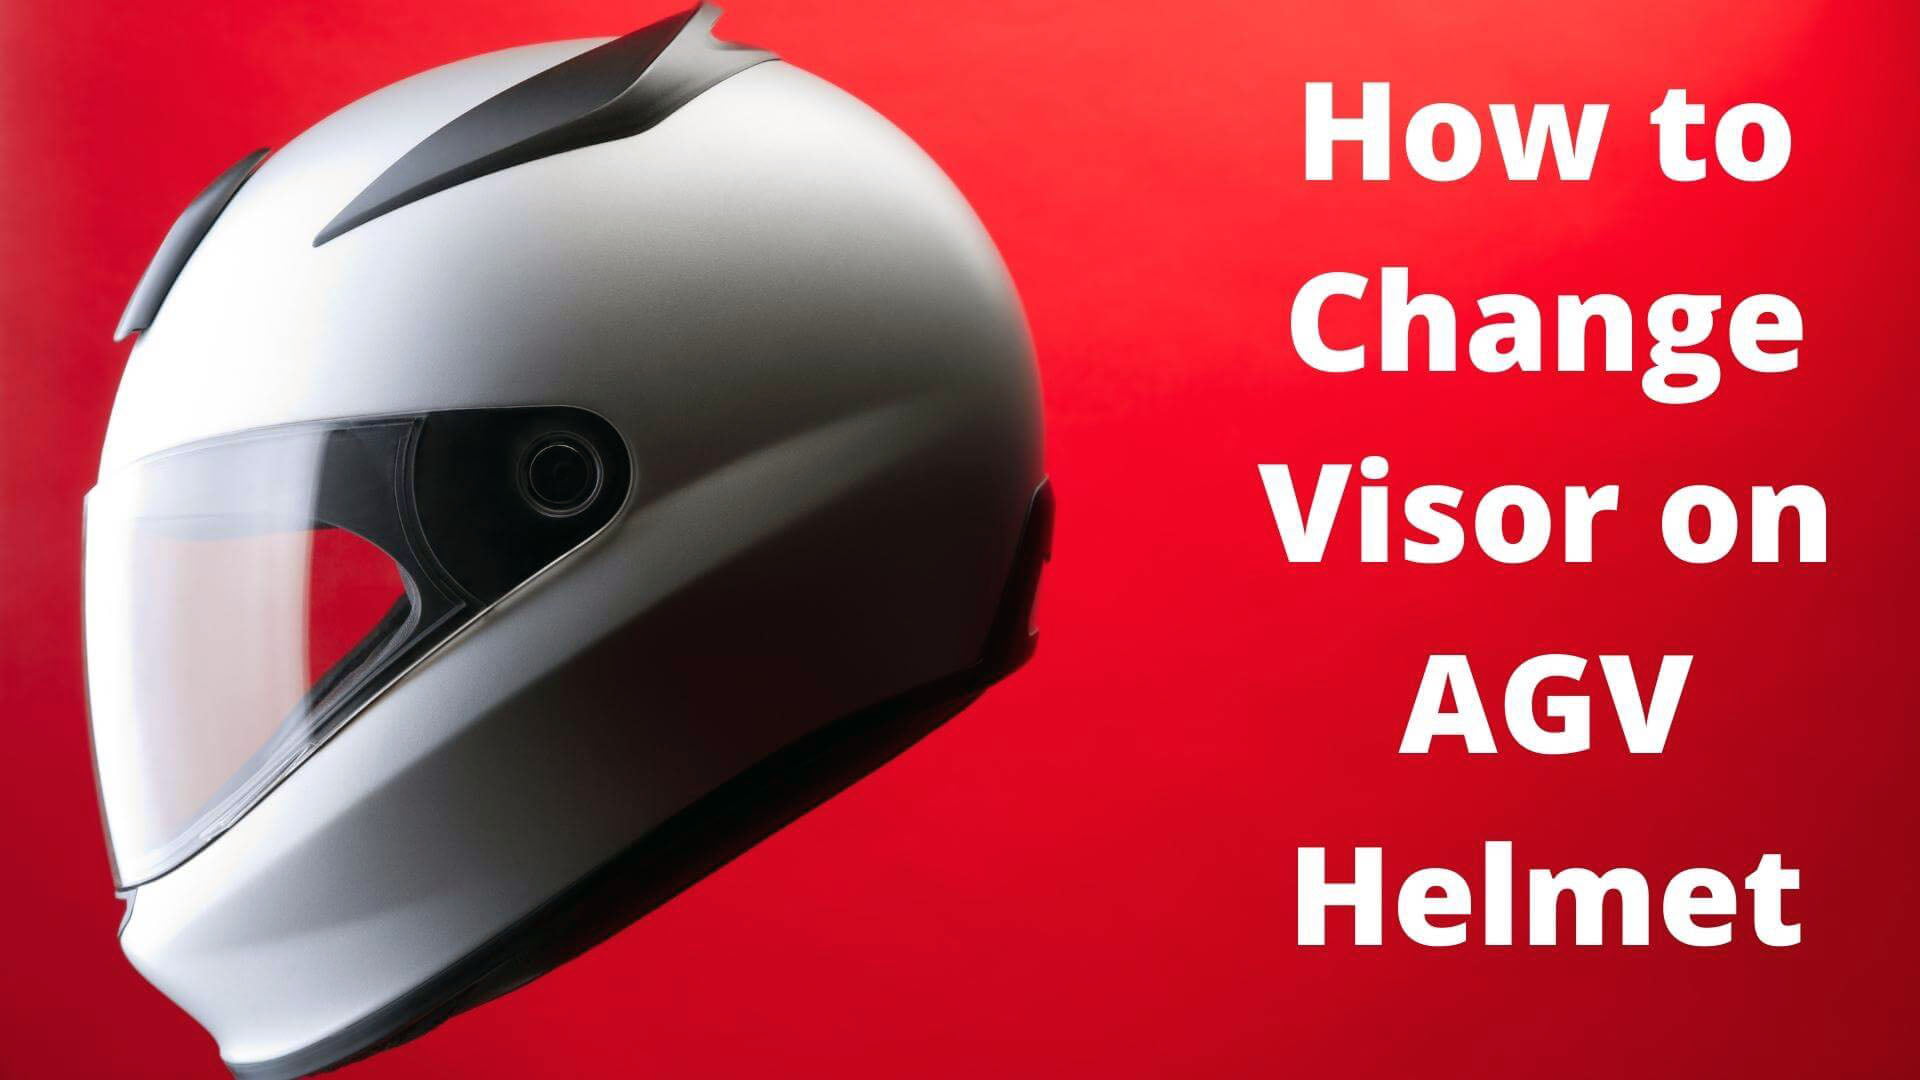 How to Change Visor on AGV Helmet In Just A Few Easy Steps